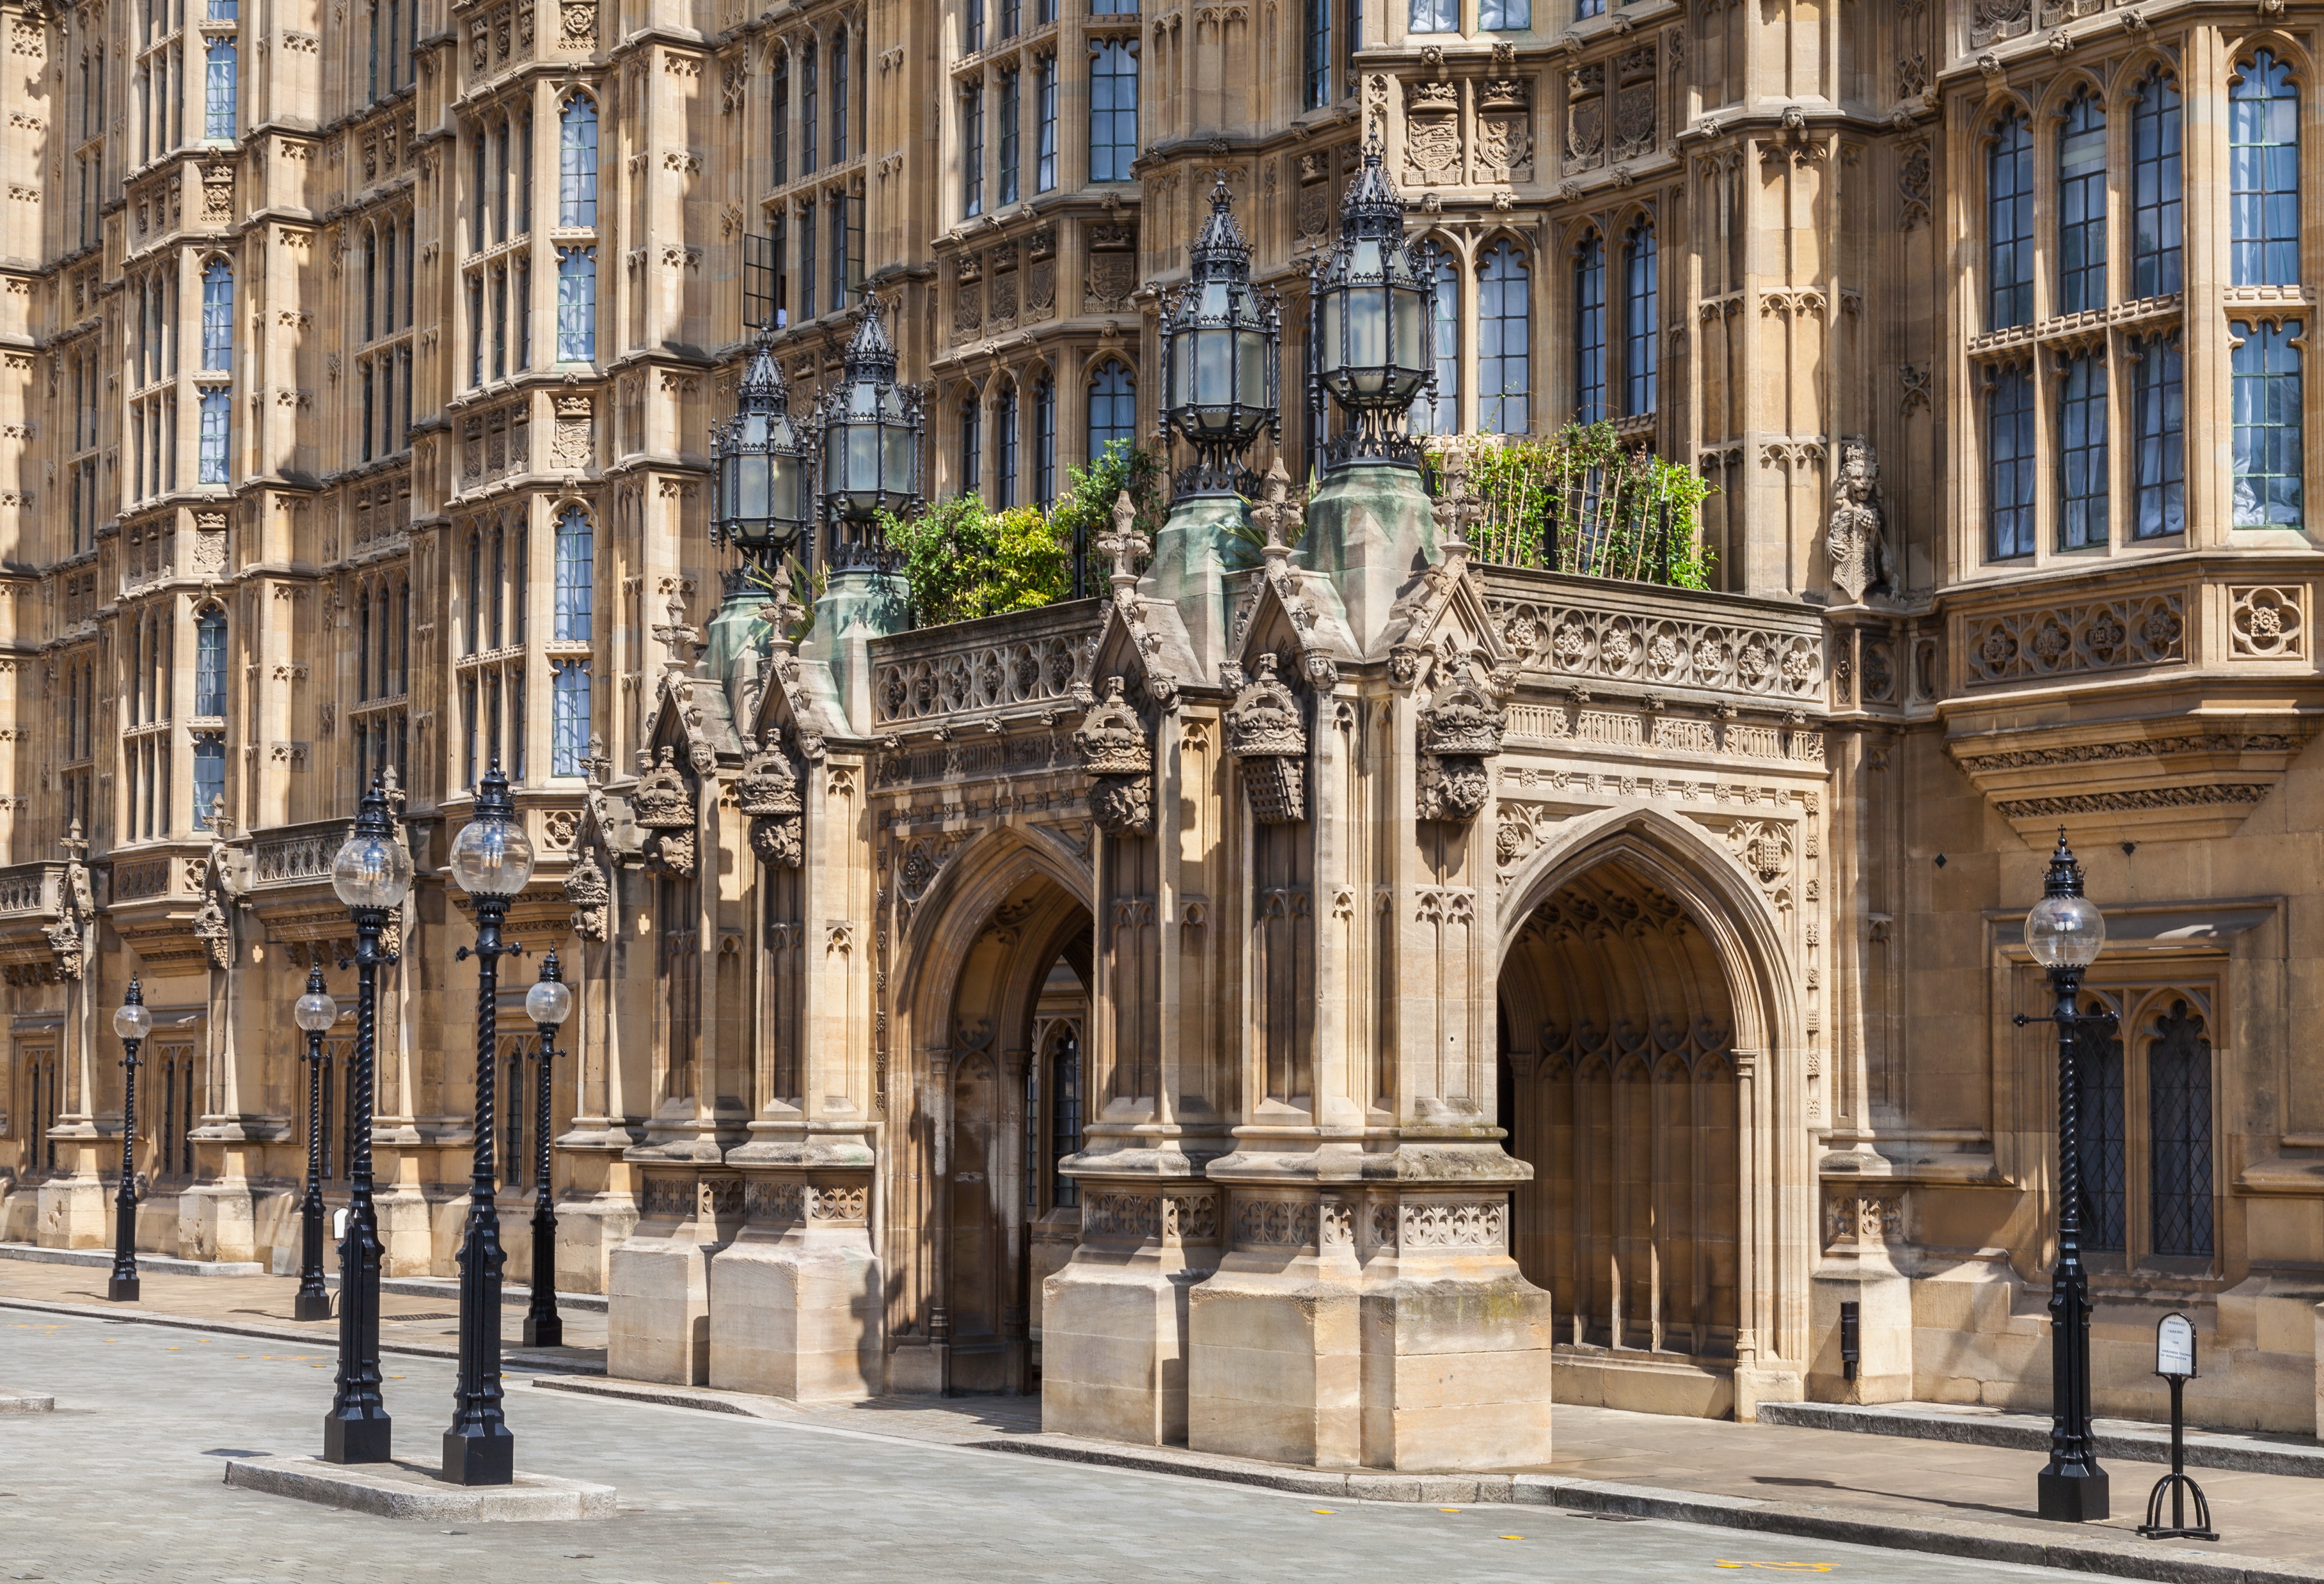 Sala Westminster, Palacio de Westminster, Londres, Inglaterra, 2014-08-07, DD 016